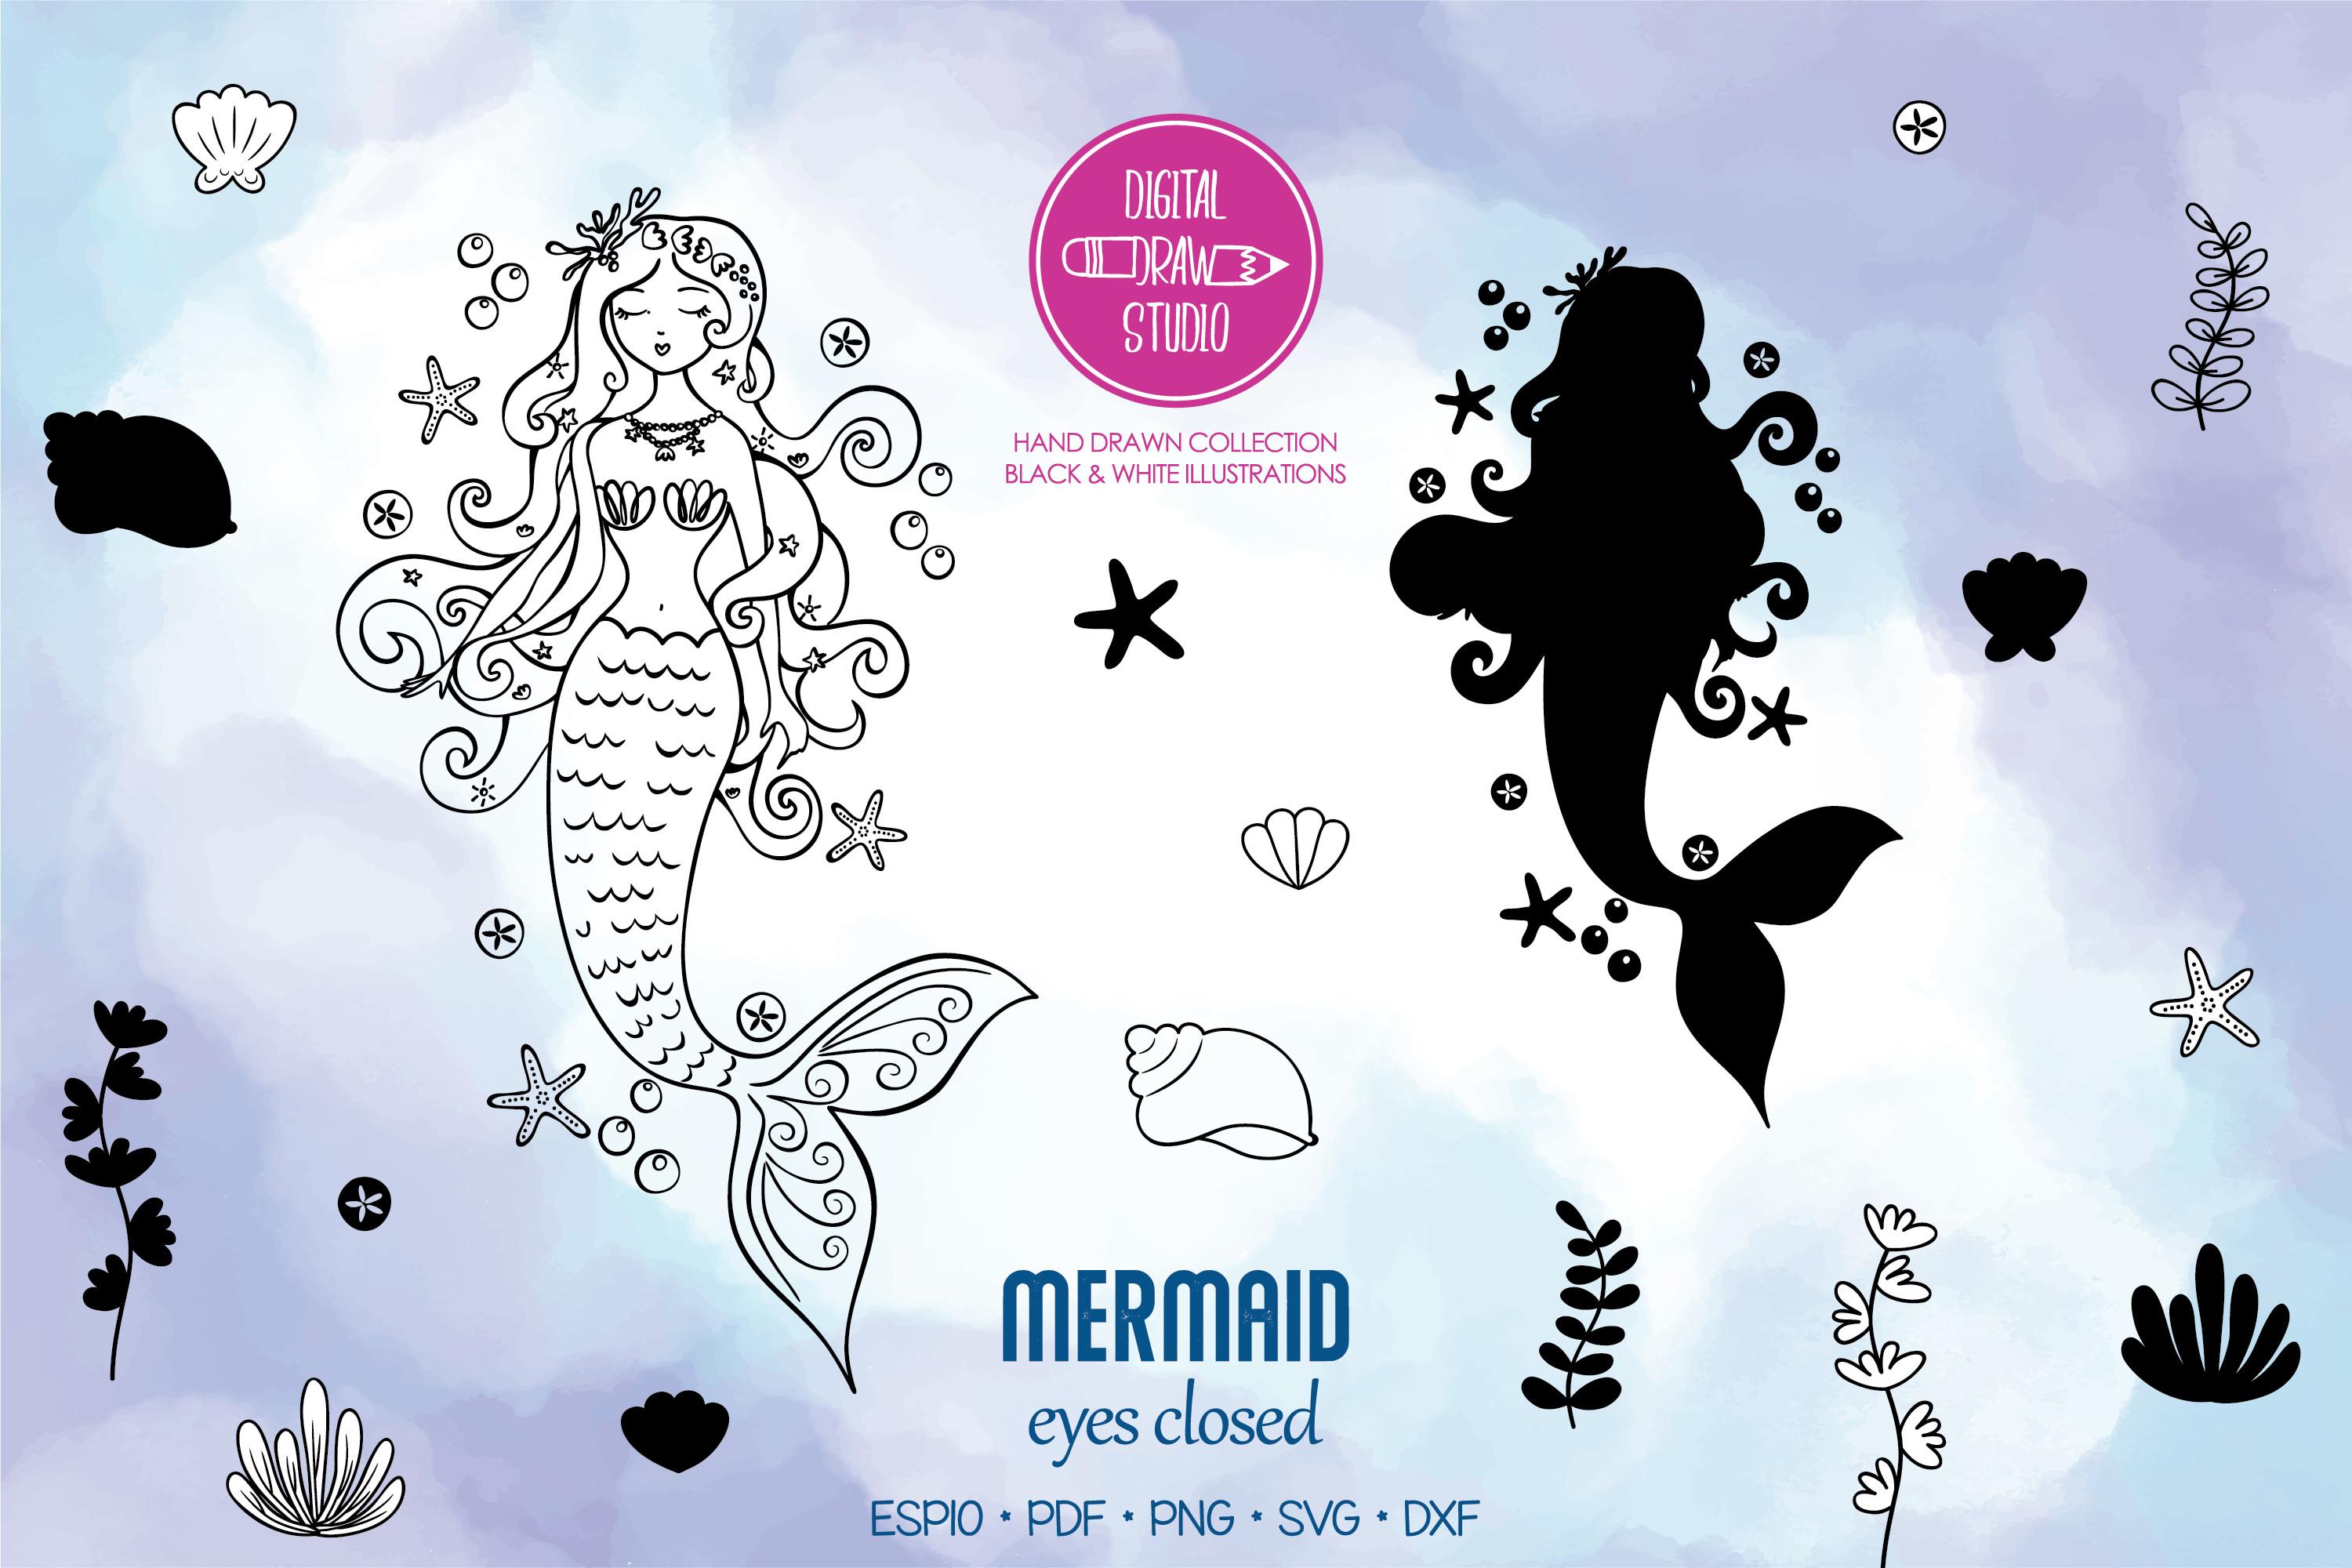 Mermaid Eyes Closed | Sea Shell, Aquatic